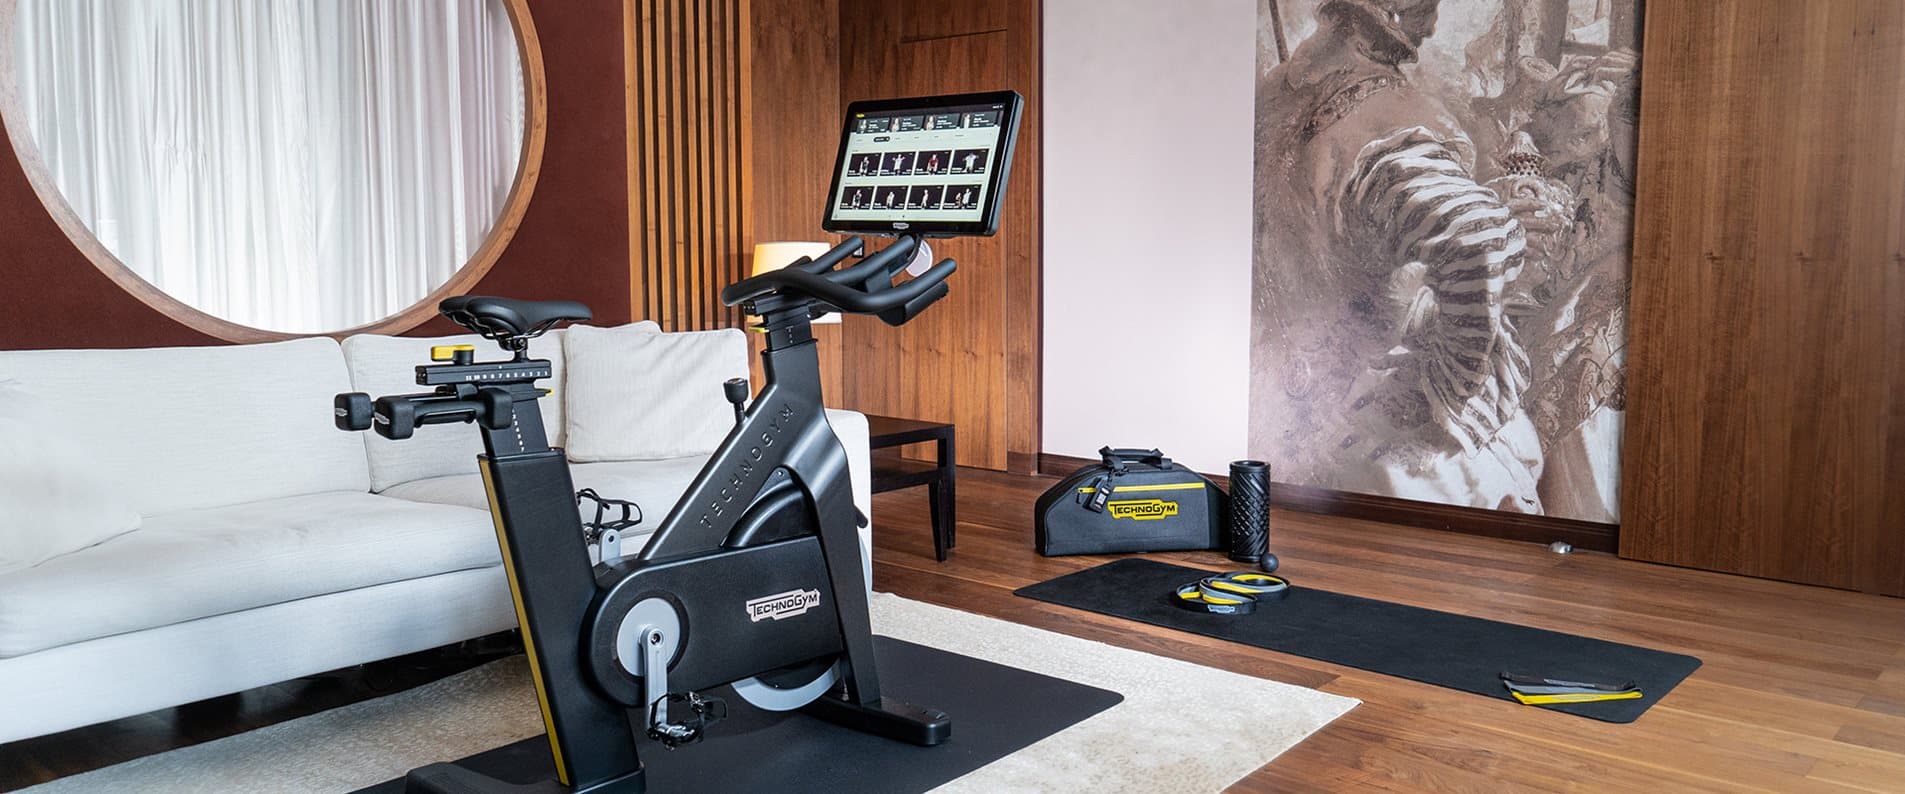 Kempinski Fit Room оснащена велосипедом Technogym для ваших персональних тренувань – незалежно від часу та місця.